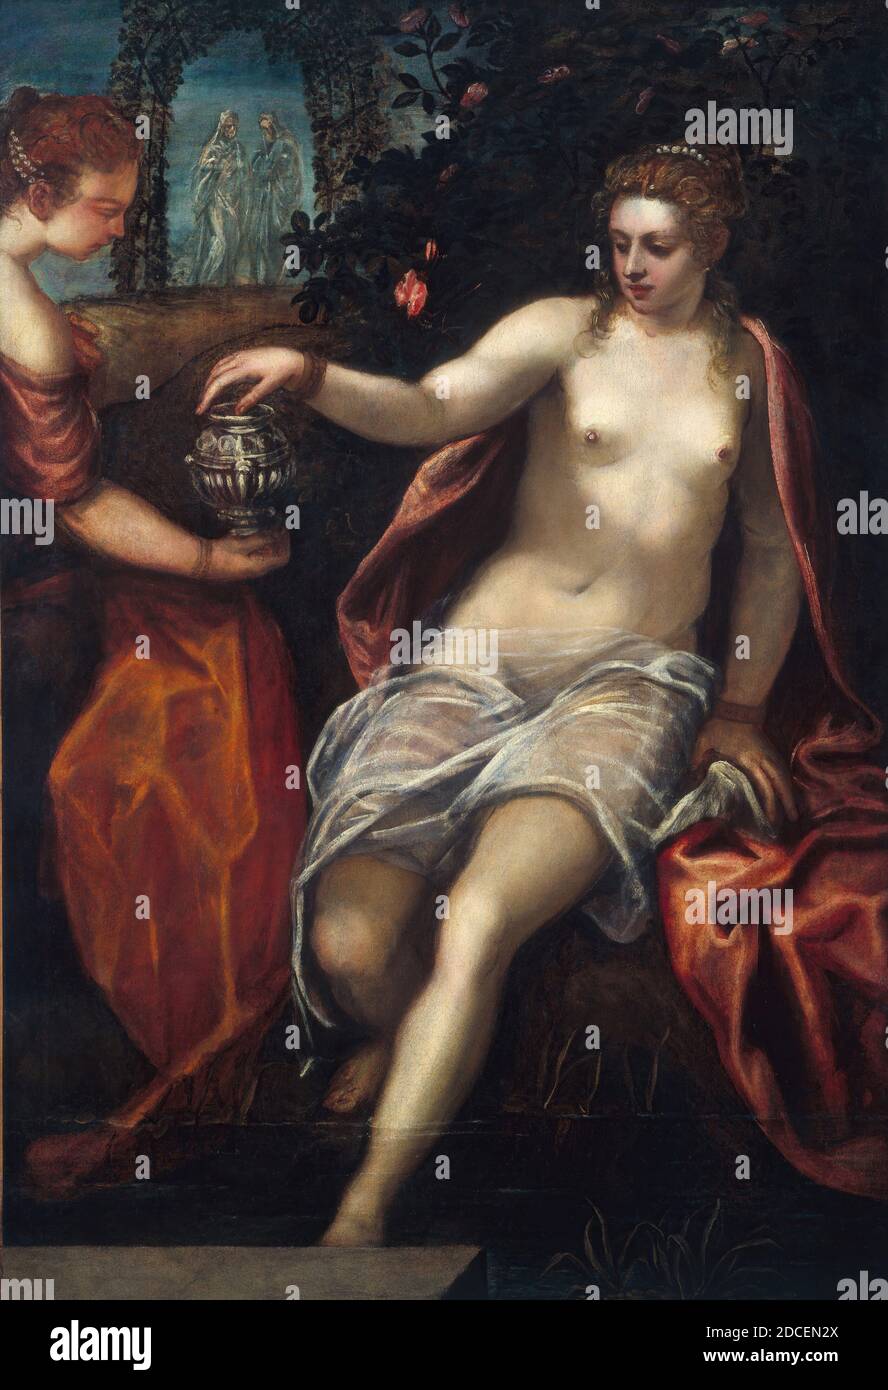 Domenico Tintoretto, (pittore), Veneziano, 1560 - 1635, Susanna, c. 1580 s, olio su tela, totale: 150.2 x 102.6 cm (59 1/8 x 40 3/8 in.), incorniciato: 185.7 x 137.8 x 10.8 cm (73 1/8 x 54 1/4 x 4 1/4 in Foto Stock